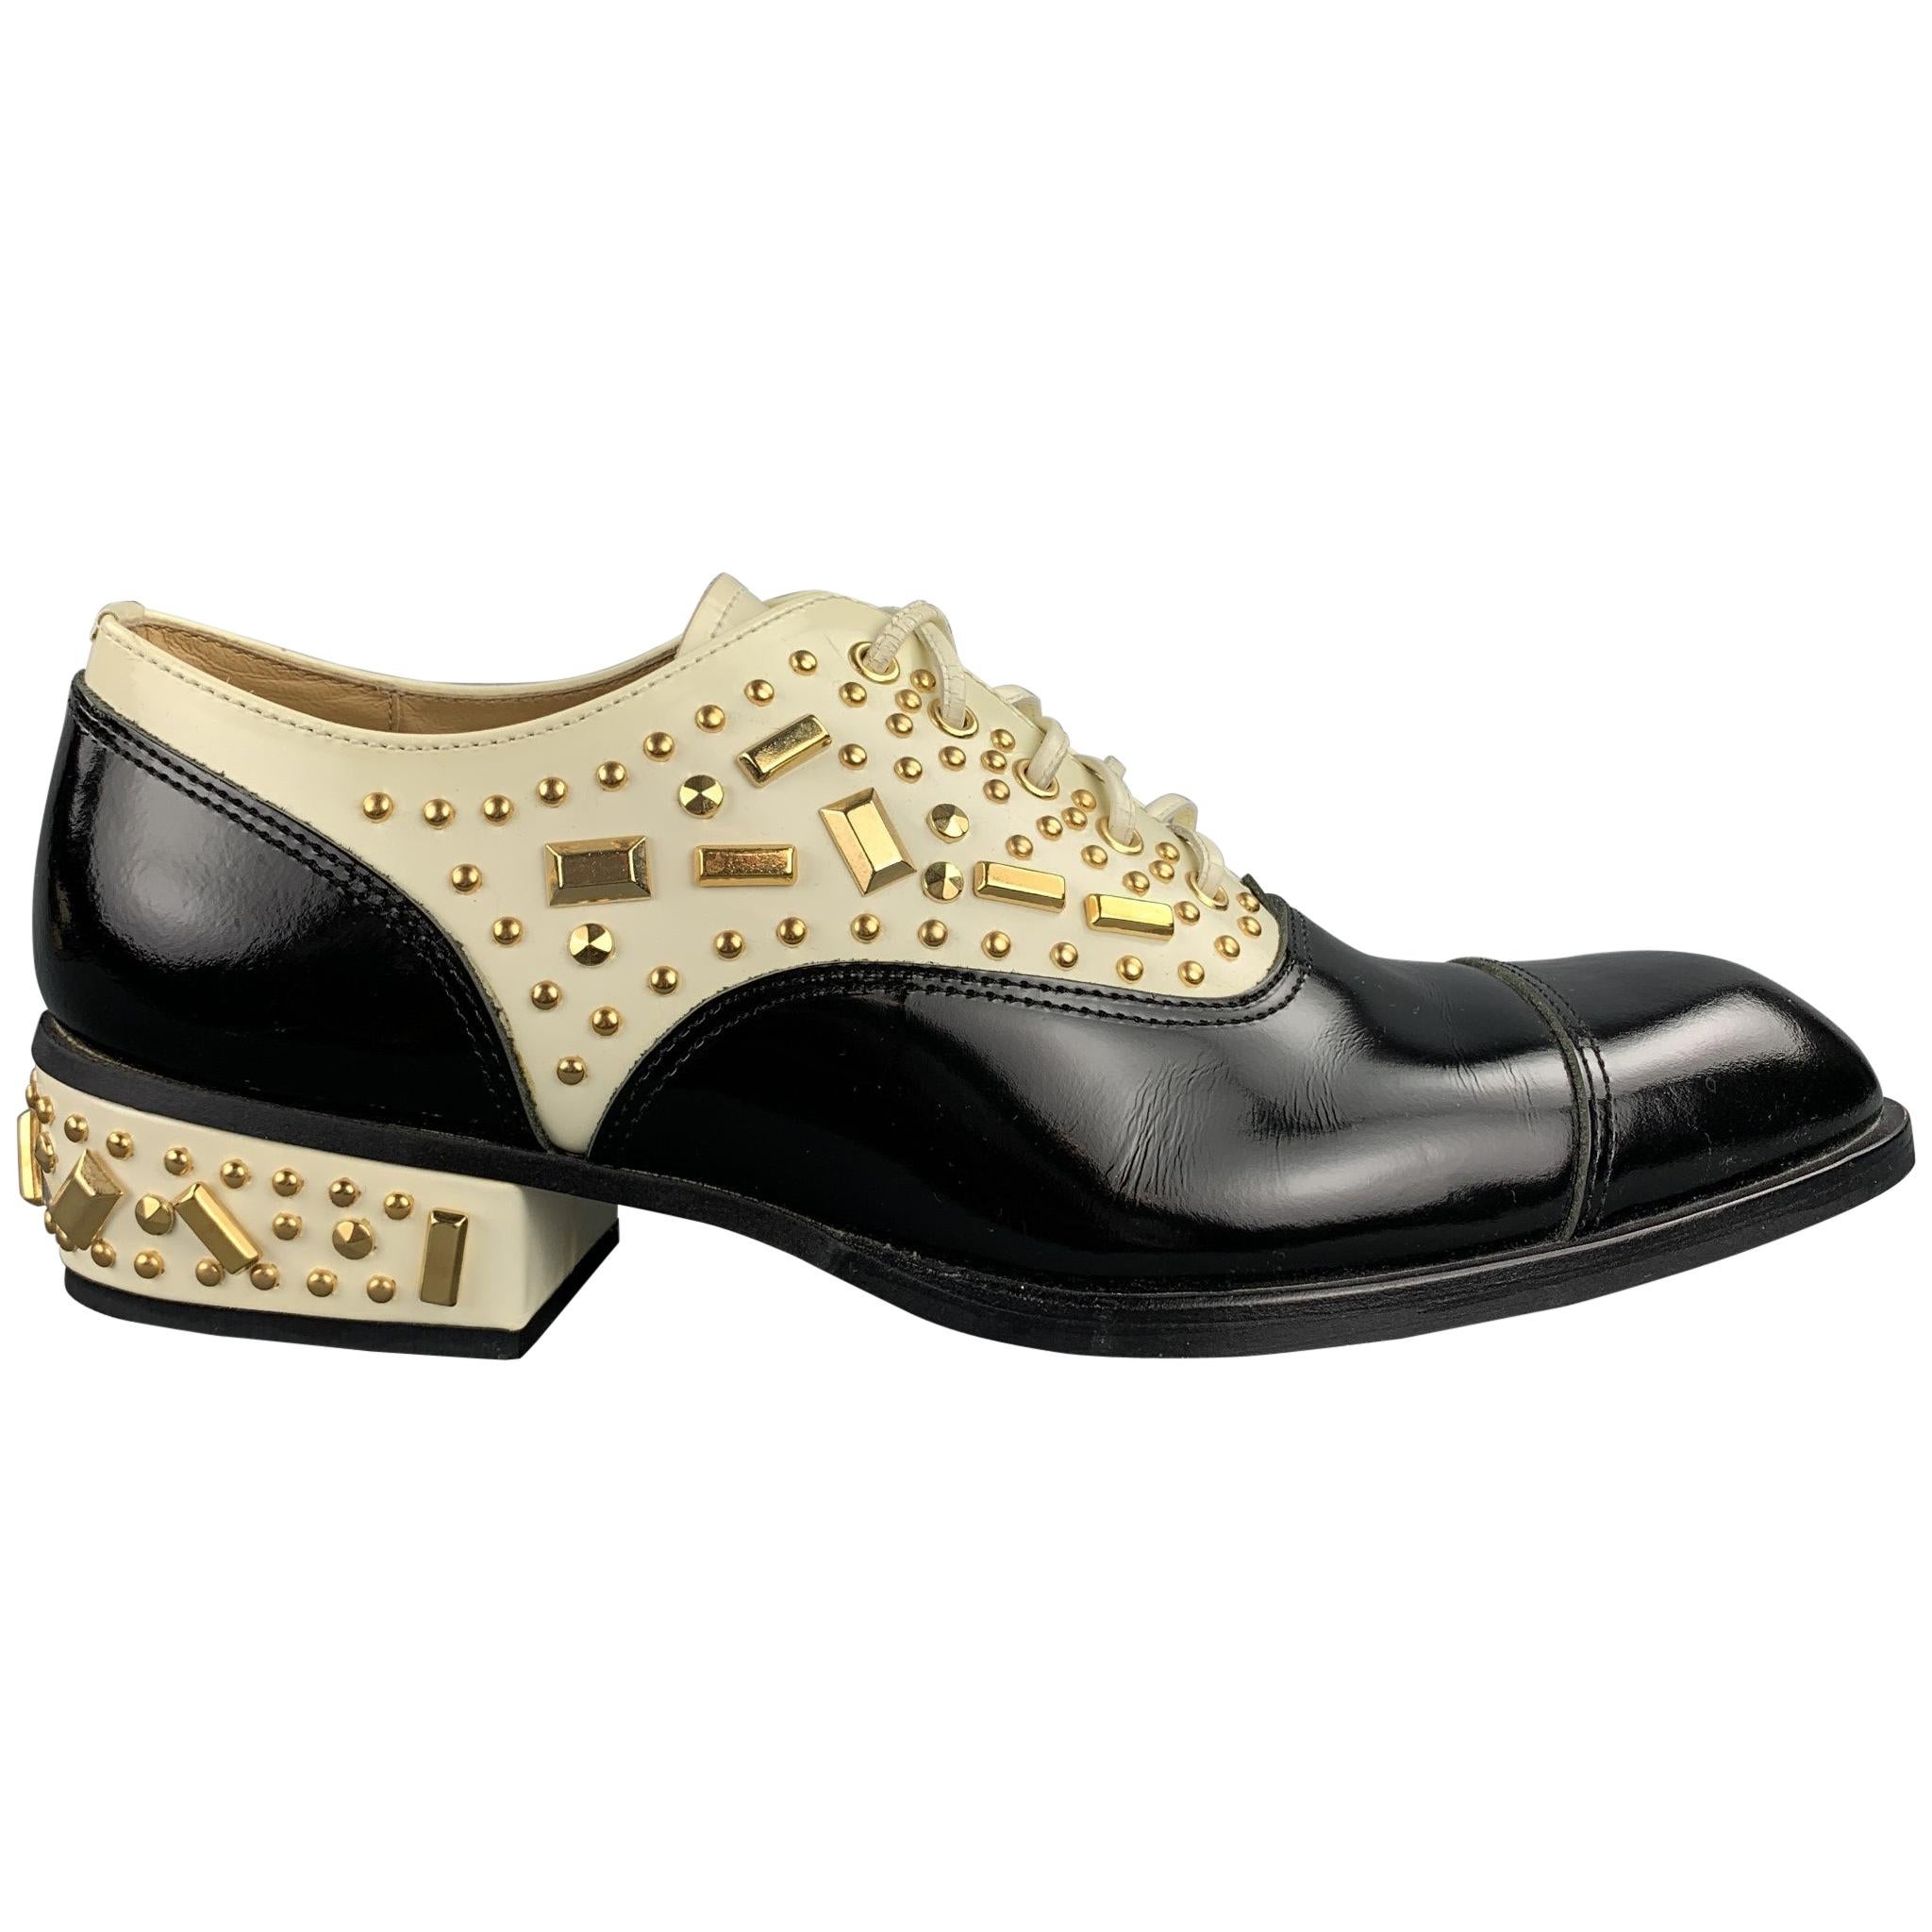 COMME des GARCONS HOMME PLUS Size 10 Black & Cream Studded Leather Lace Up Shoes